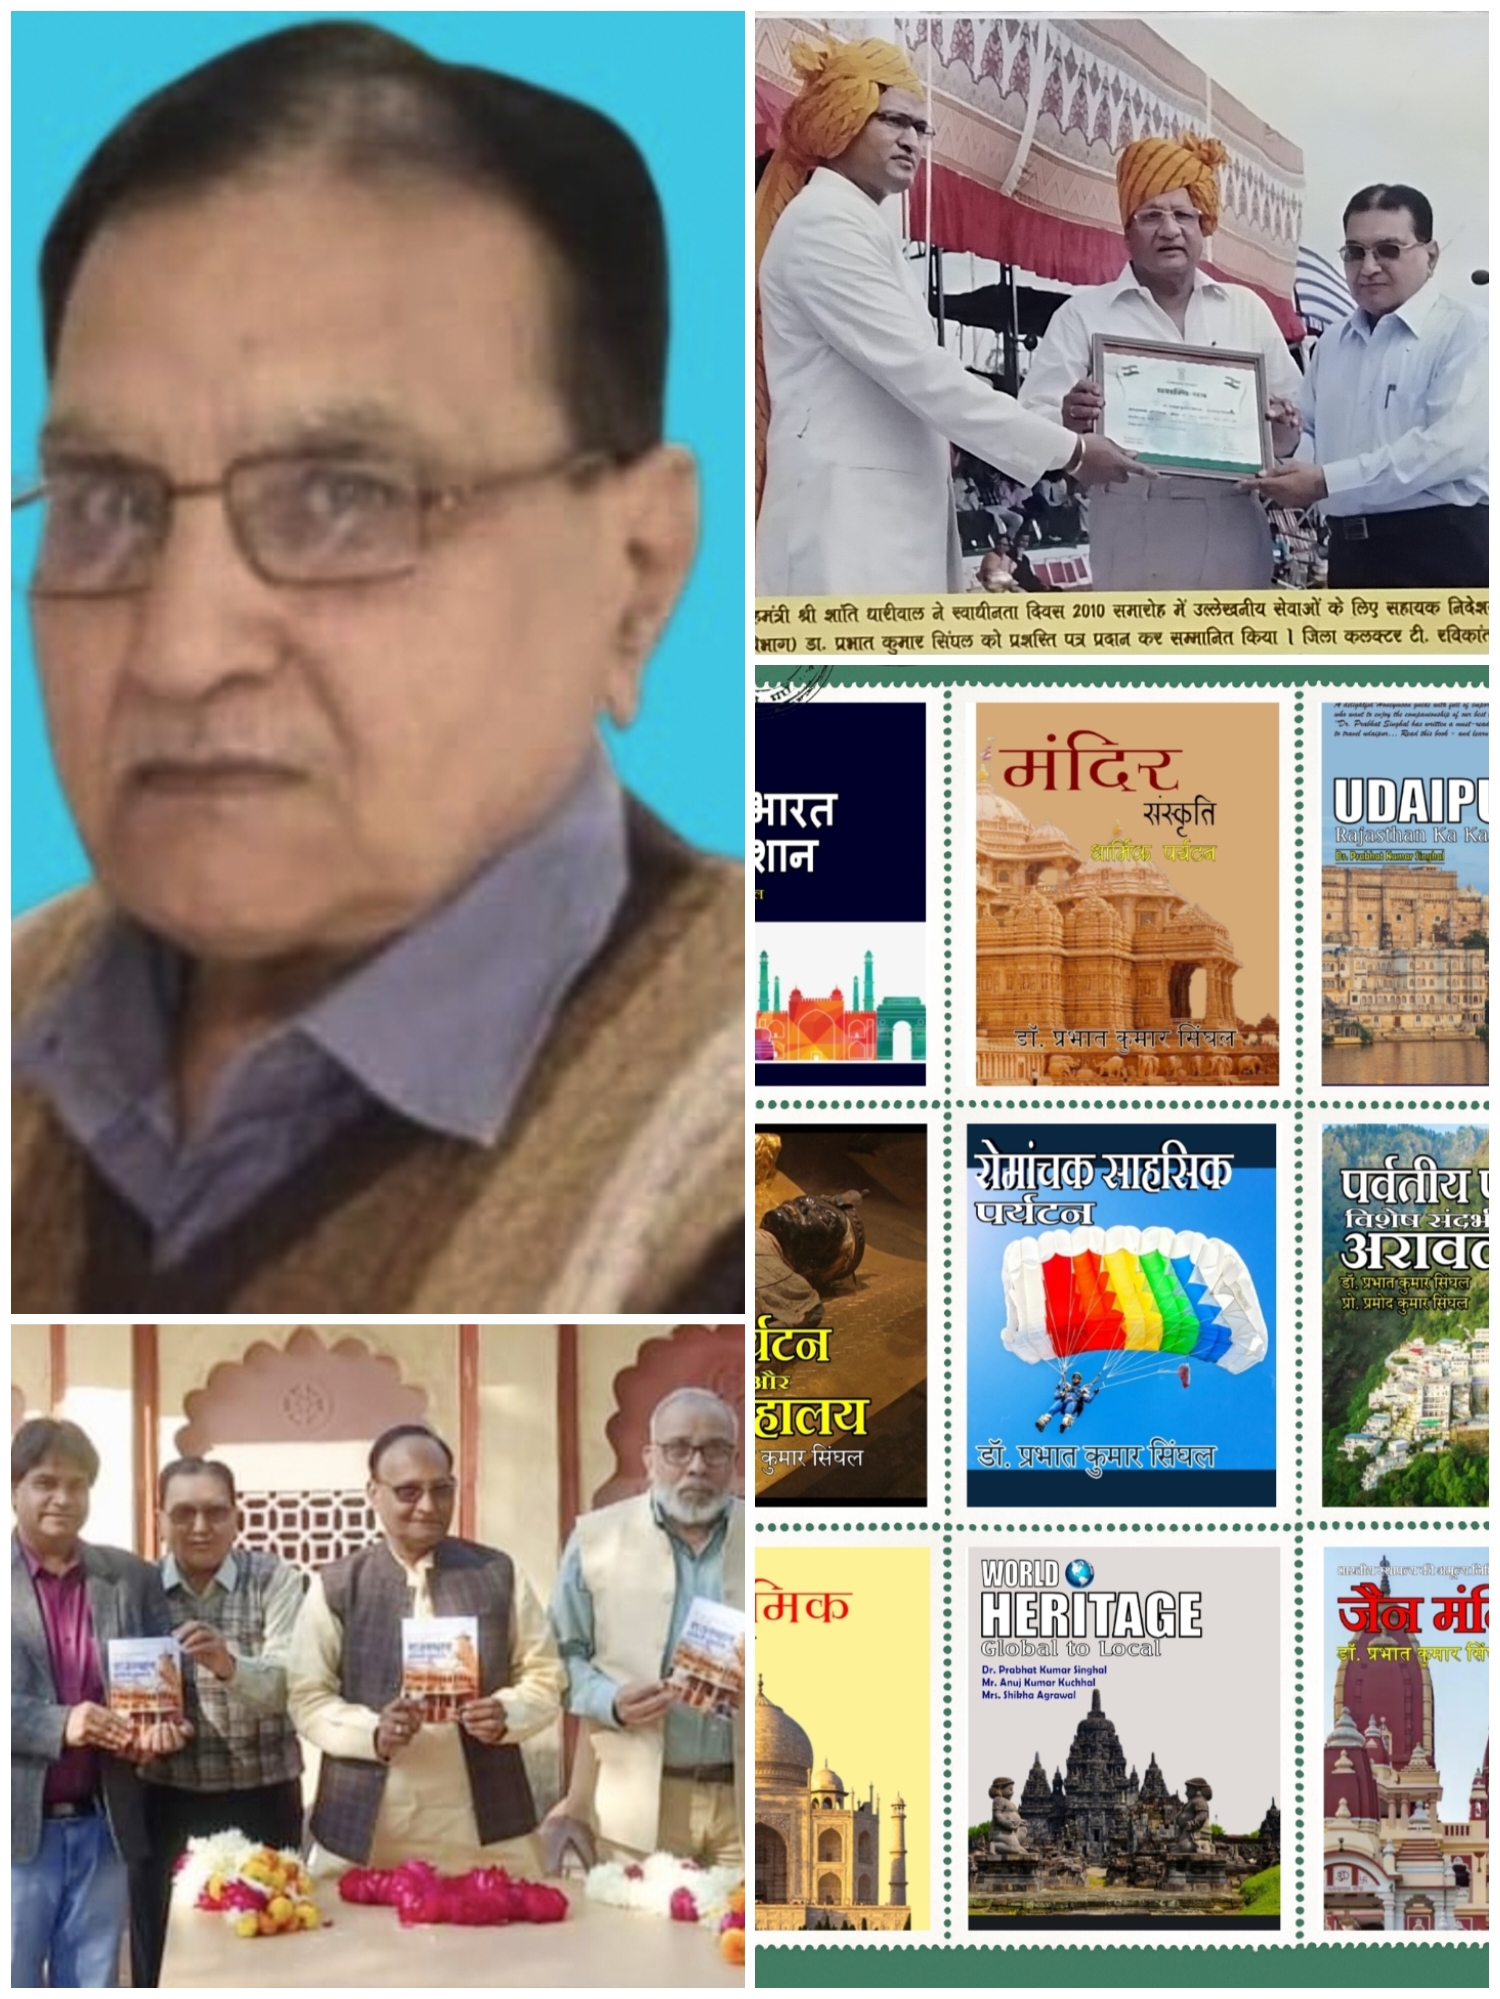 कला, साहित्य और संस्कृति को आत्मसात कर जीवंत करती शख्शियत डॉ प्रभात कुमार सिंघल